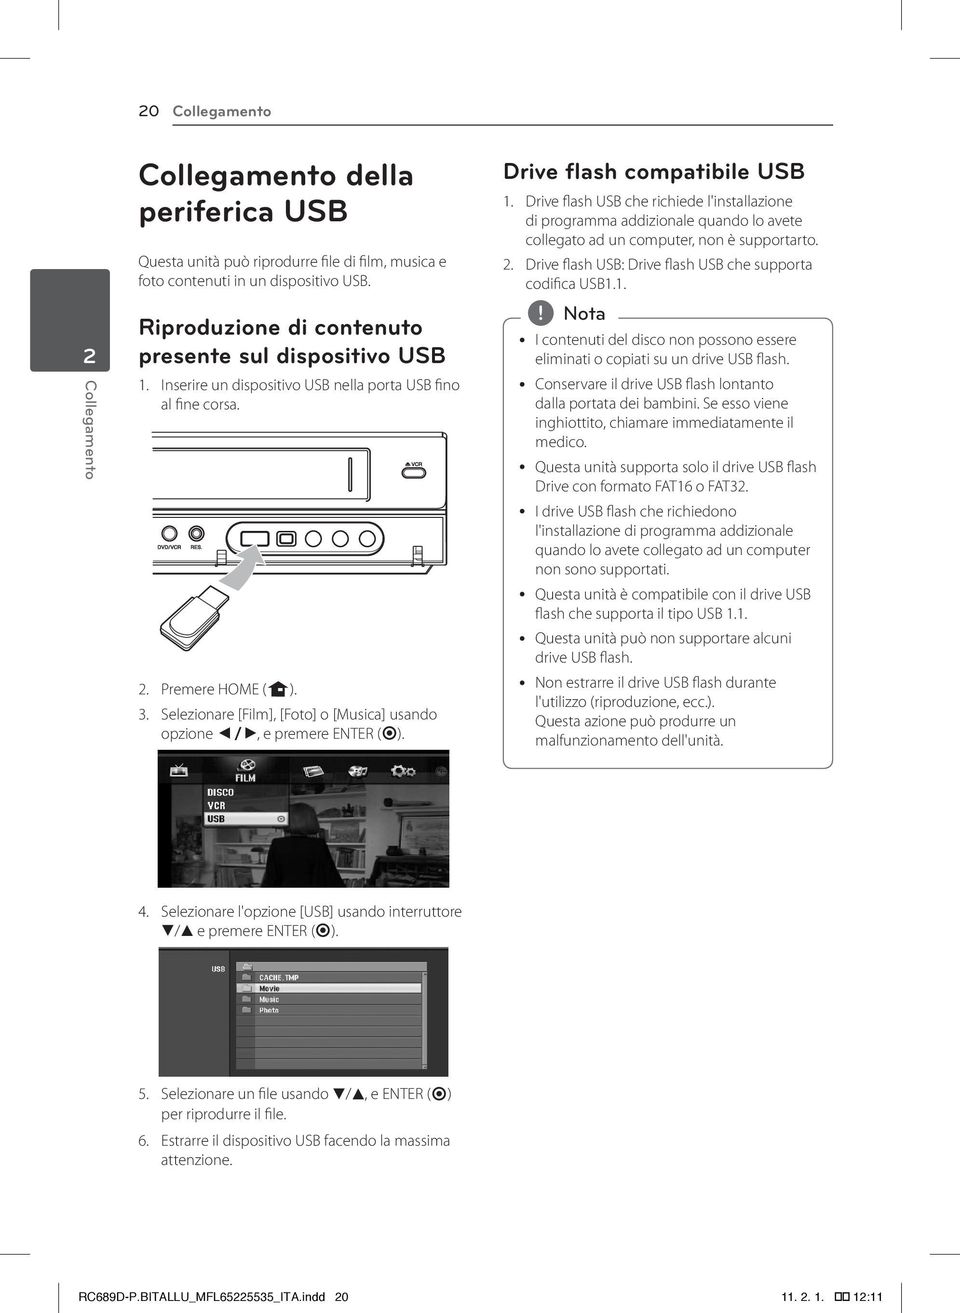 Selezionare [Film], [Foto] o [Musica] usando opzione a/d, e premere ENTER (b). Drive flash compatibile USB 1.